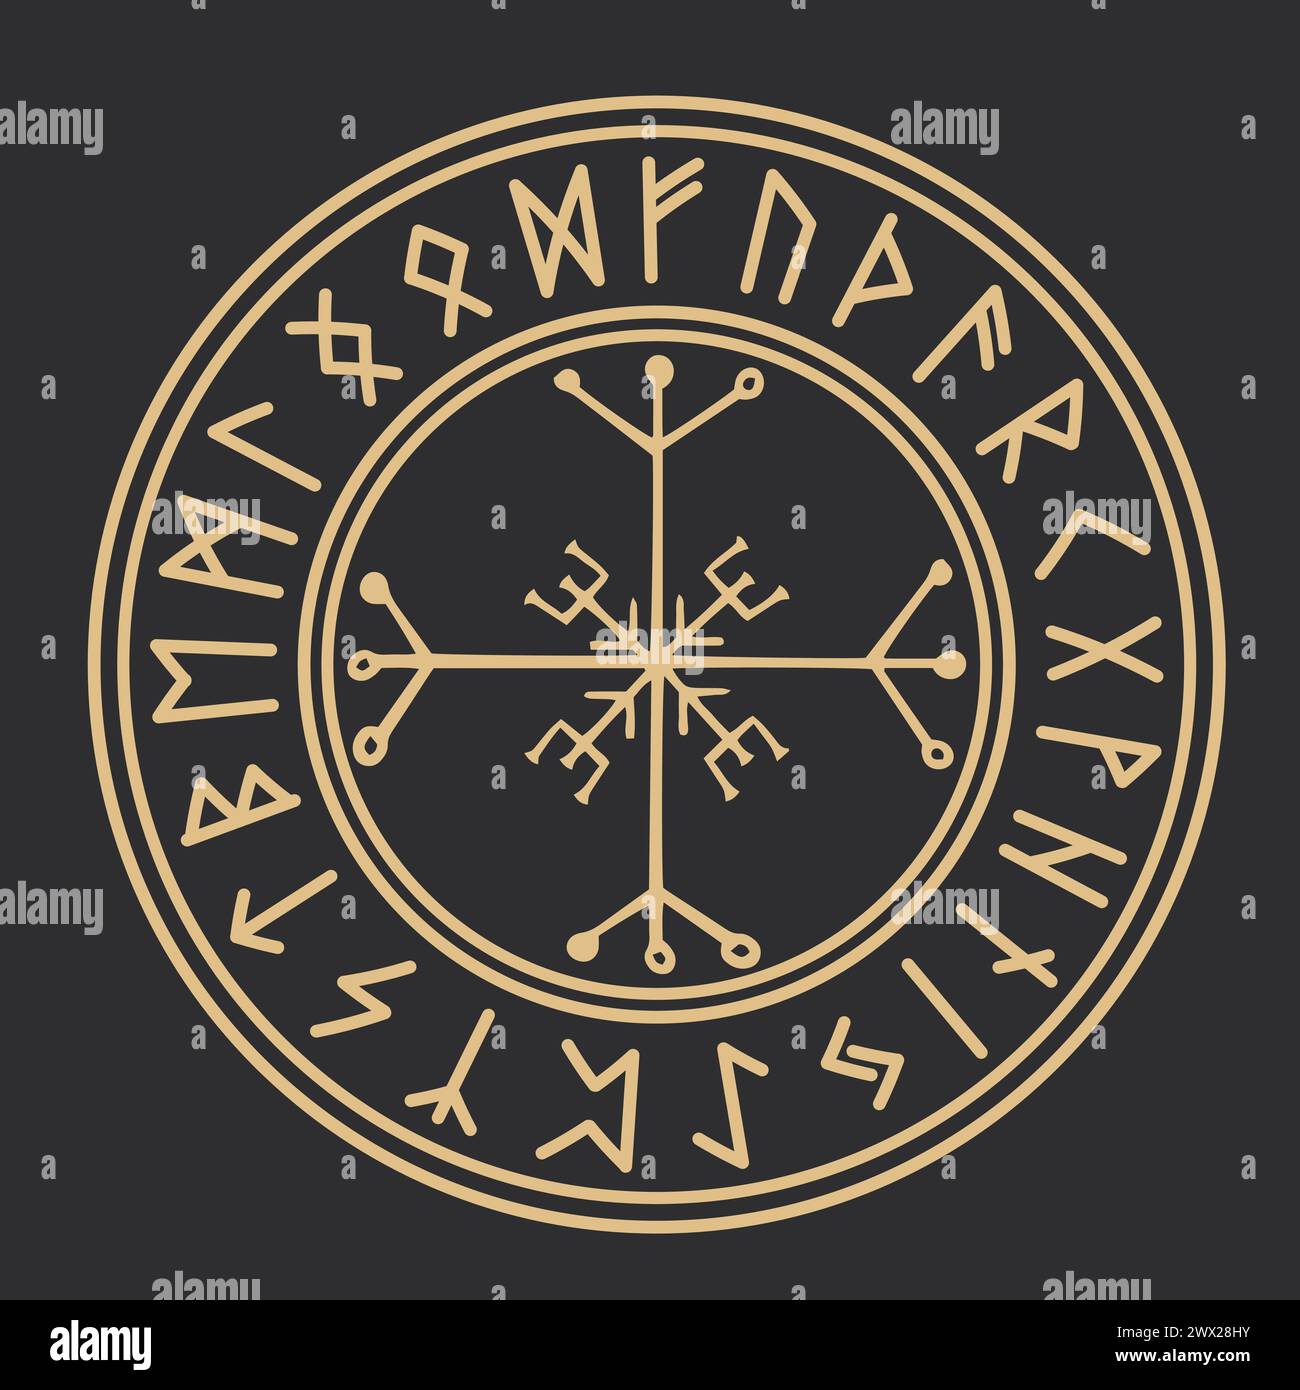 Runenkreis Gold isländischer keltischer wikinger-Talisman Navigation Kompass, Rahmen okkultes Amulett, stammesnordische Schrift isoliert auf dunklem Hintergrund. Vektorabbildung Stock Vektor